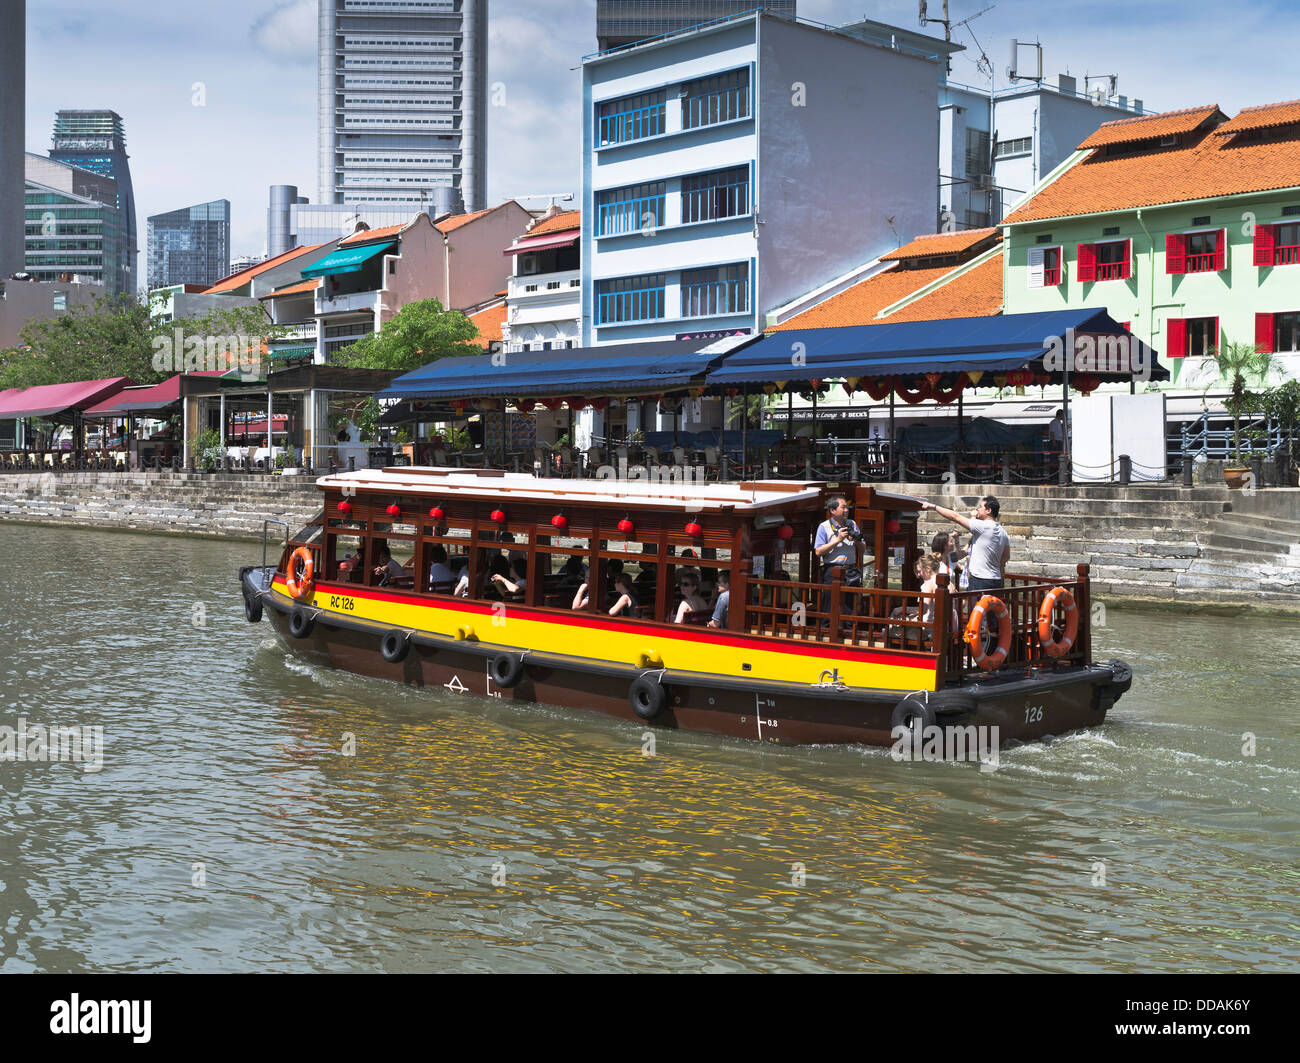 Dh Singapore River Boat Quay SINGAPOUR Voyage Touristique tours taxi de l'eau Singapour tourisme bord de bateaux Banque D'Images